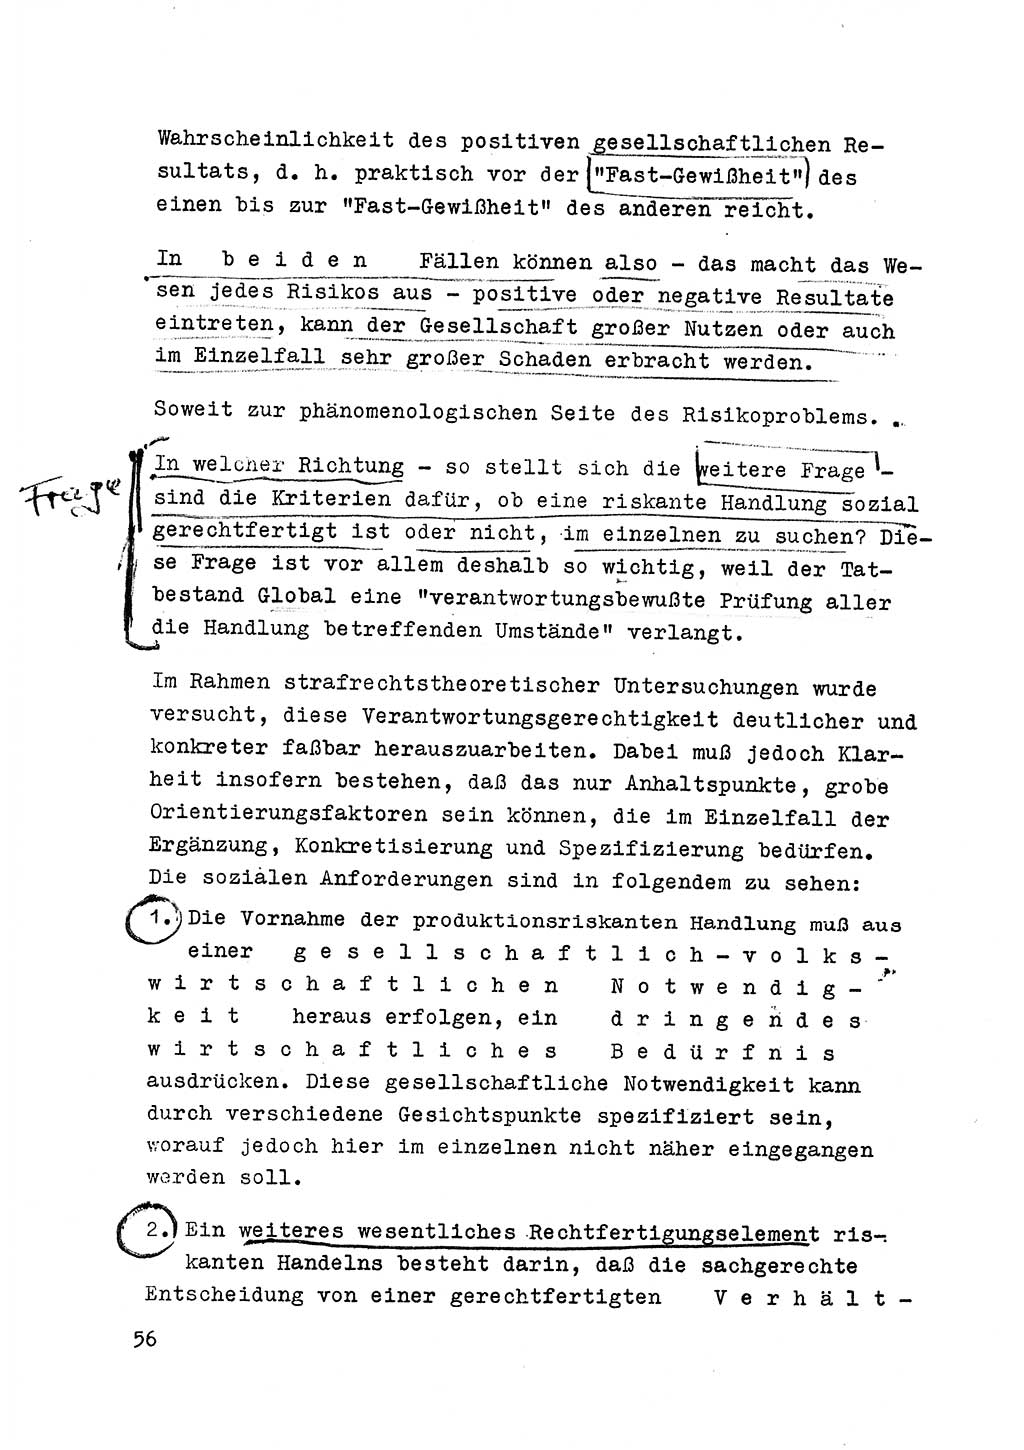 Strafrecht der DDR (Deutsche Demokratische Republik), Besonderer Teil, Lehrmaterial, Heft 6 1970, Seite 56 (Strafr. DDR BT Lehrmat. H. 6 1970, S. 56)